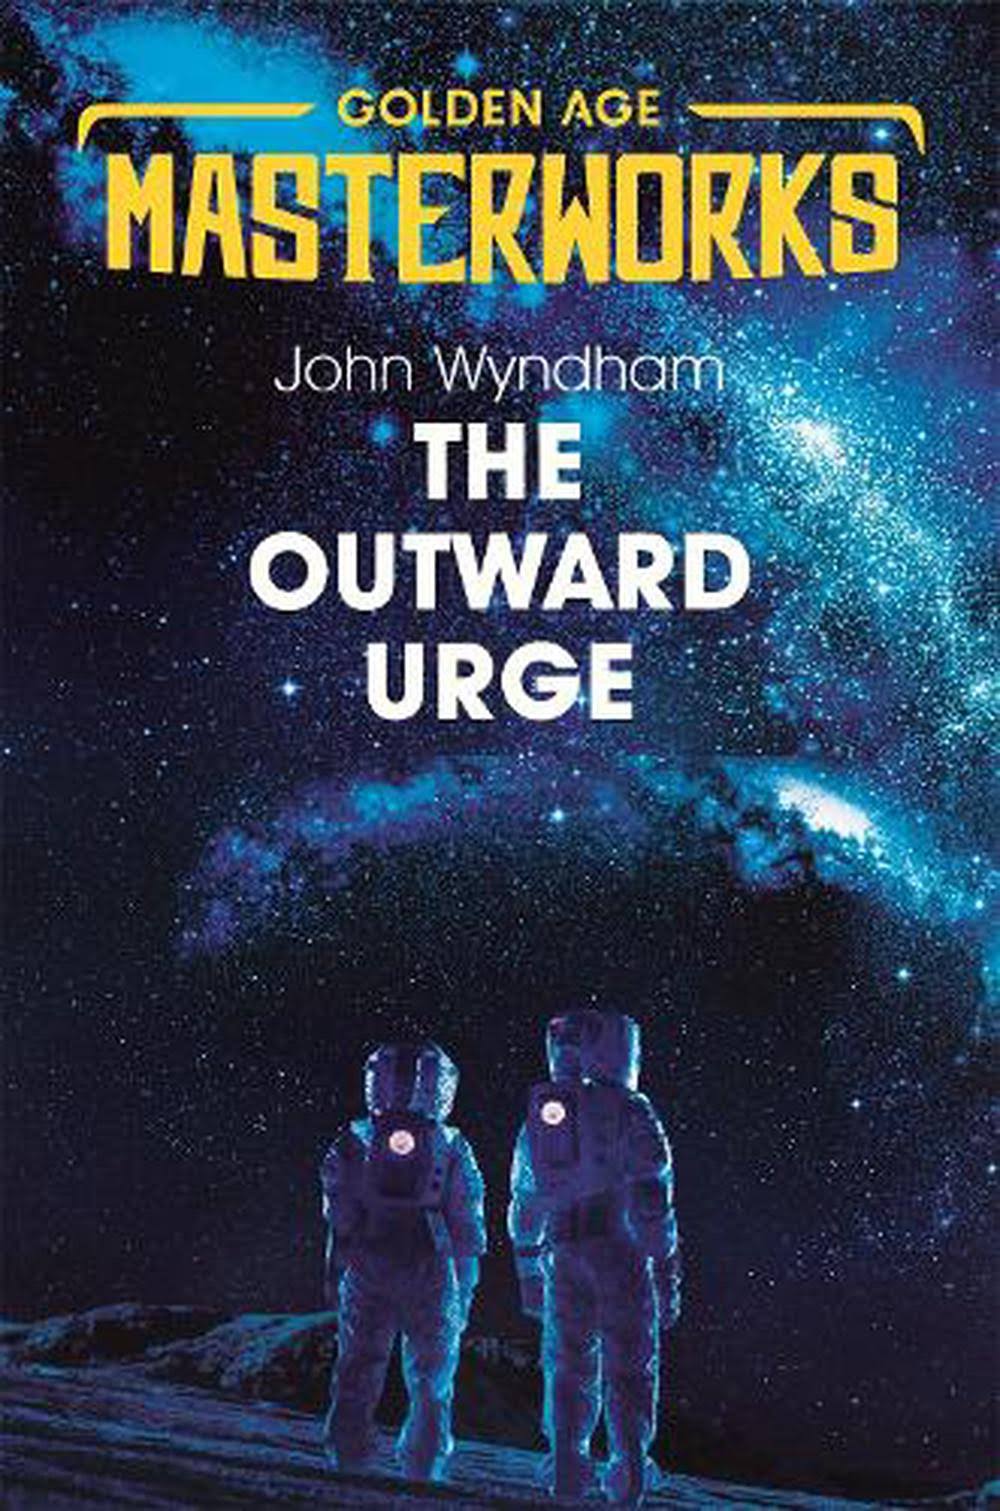 The Outward Urge by John Wyndham